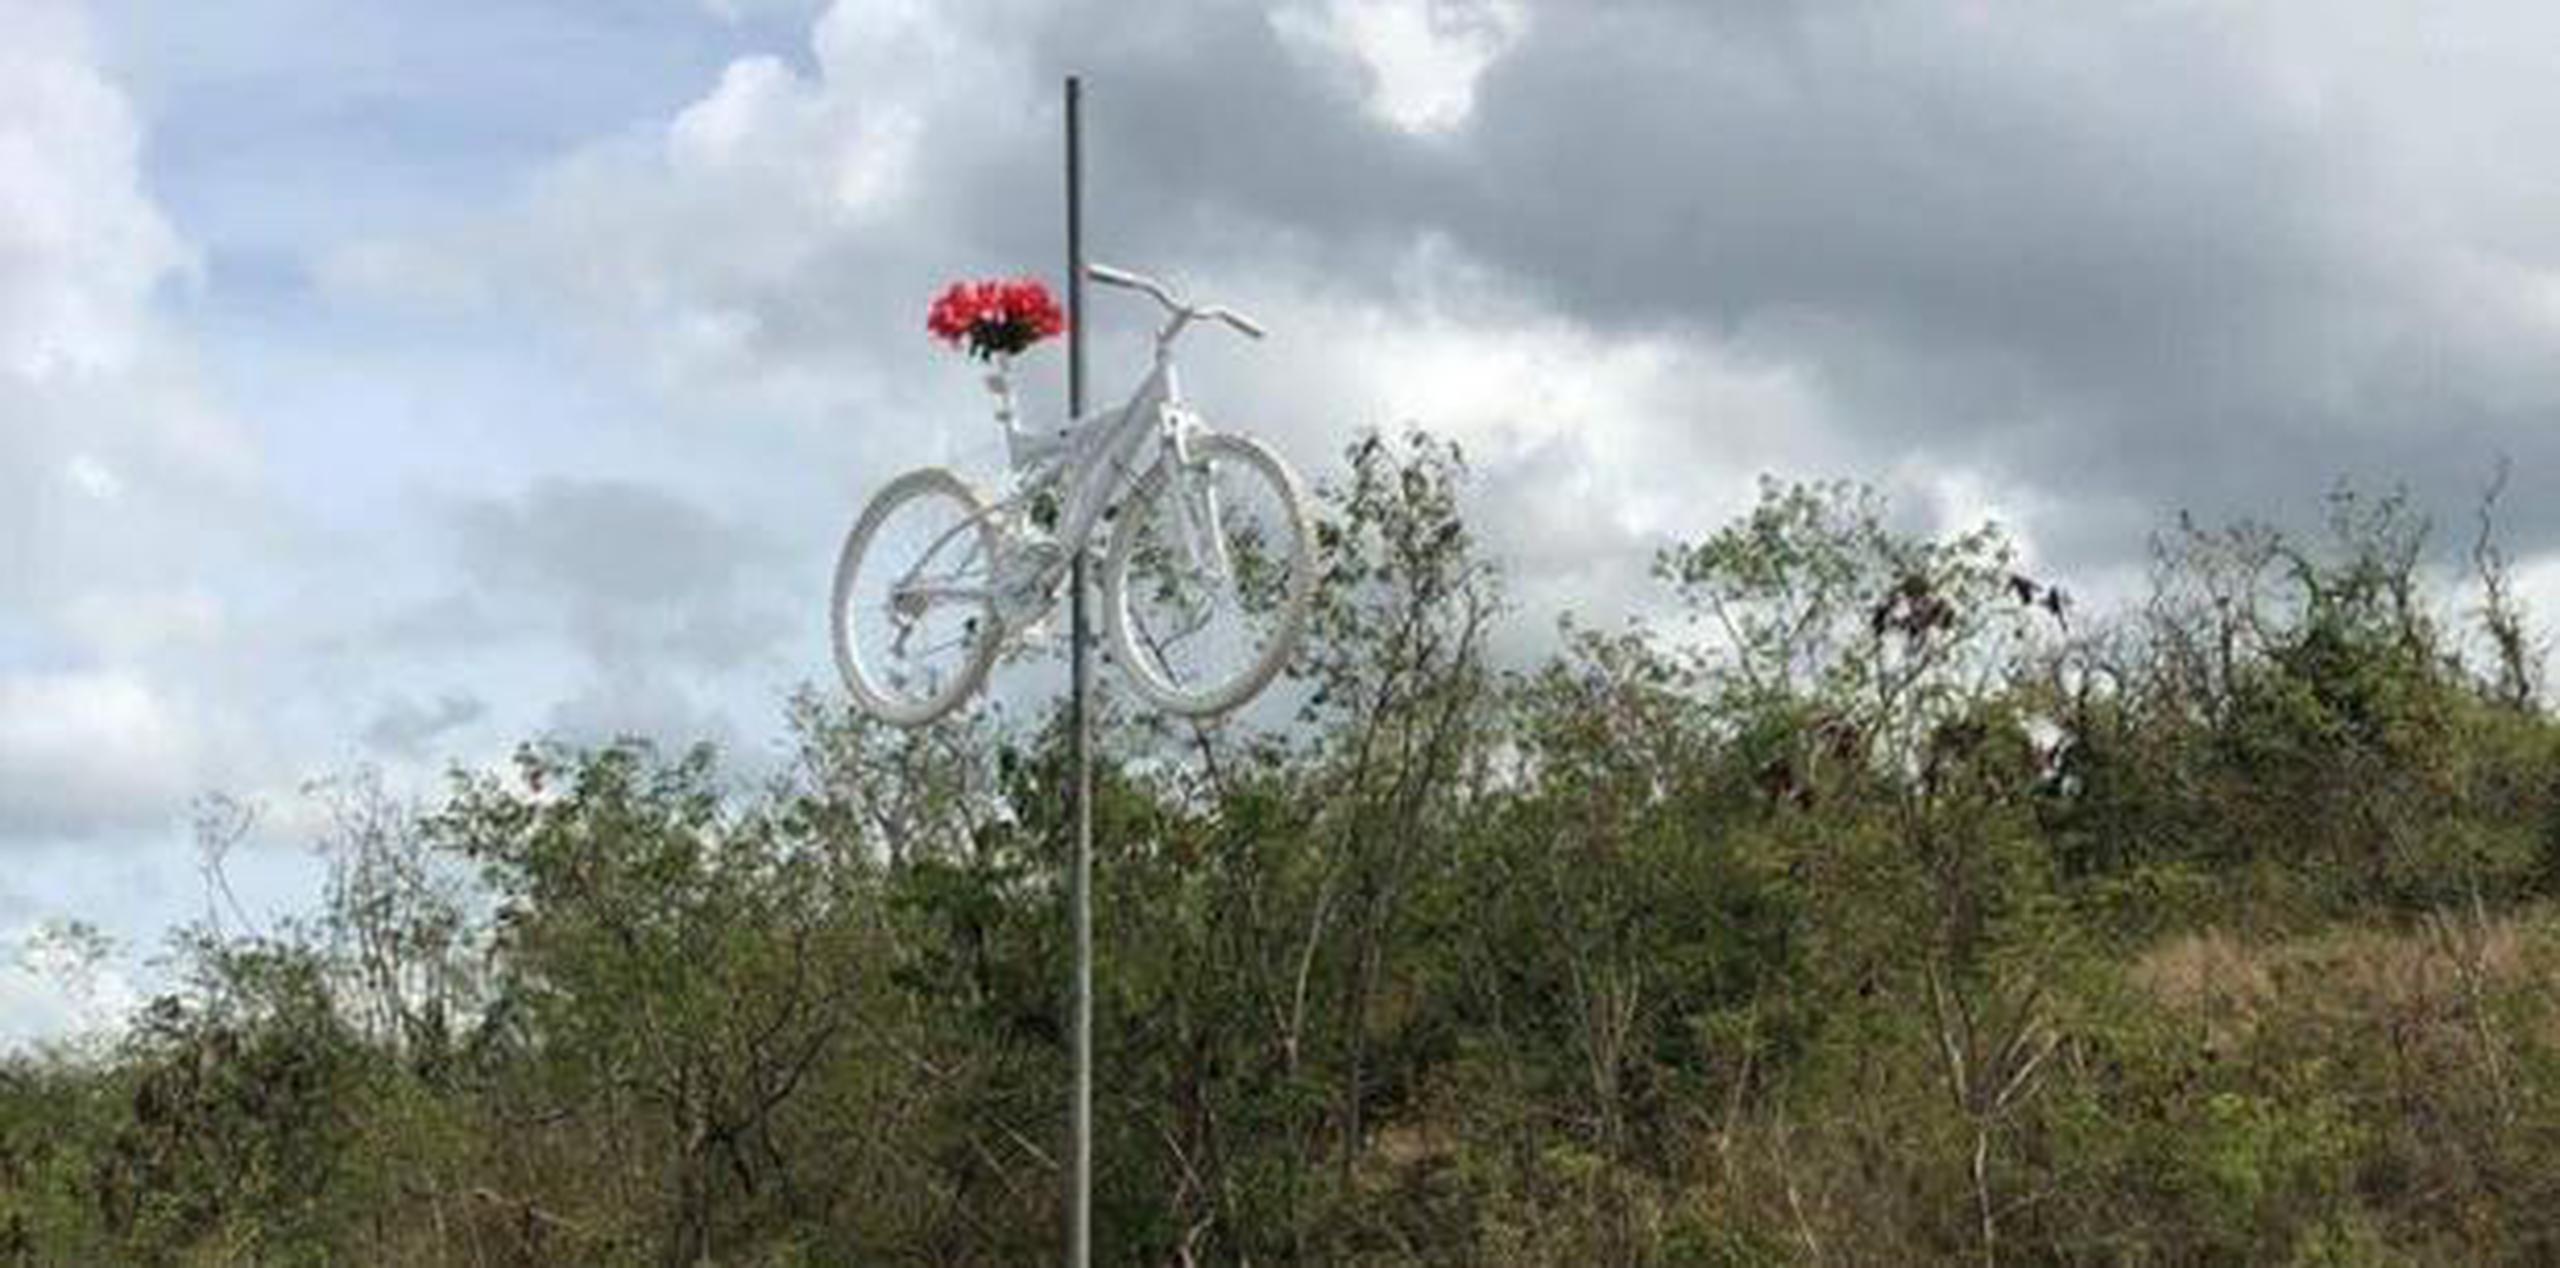 Harán una parada en la carretera 10 antes de la salida hacia la carretera 14 de Ponce a Adjuntas, donde Fernando Soto Castillo de 64 años, falleció cuando corría bicicleta junto a dos nietos al ser atropellados por un conductor. (Archivo)